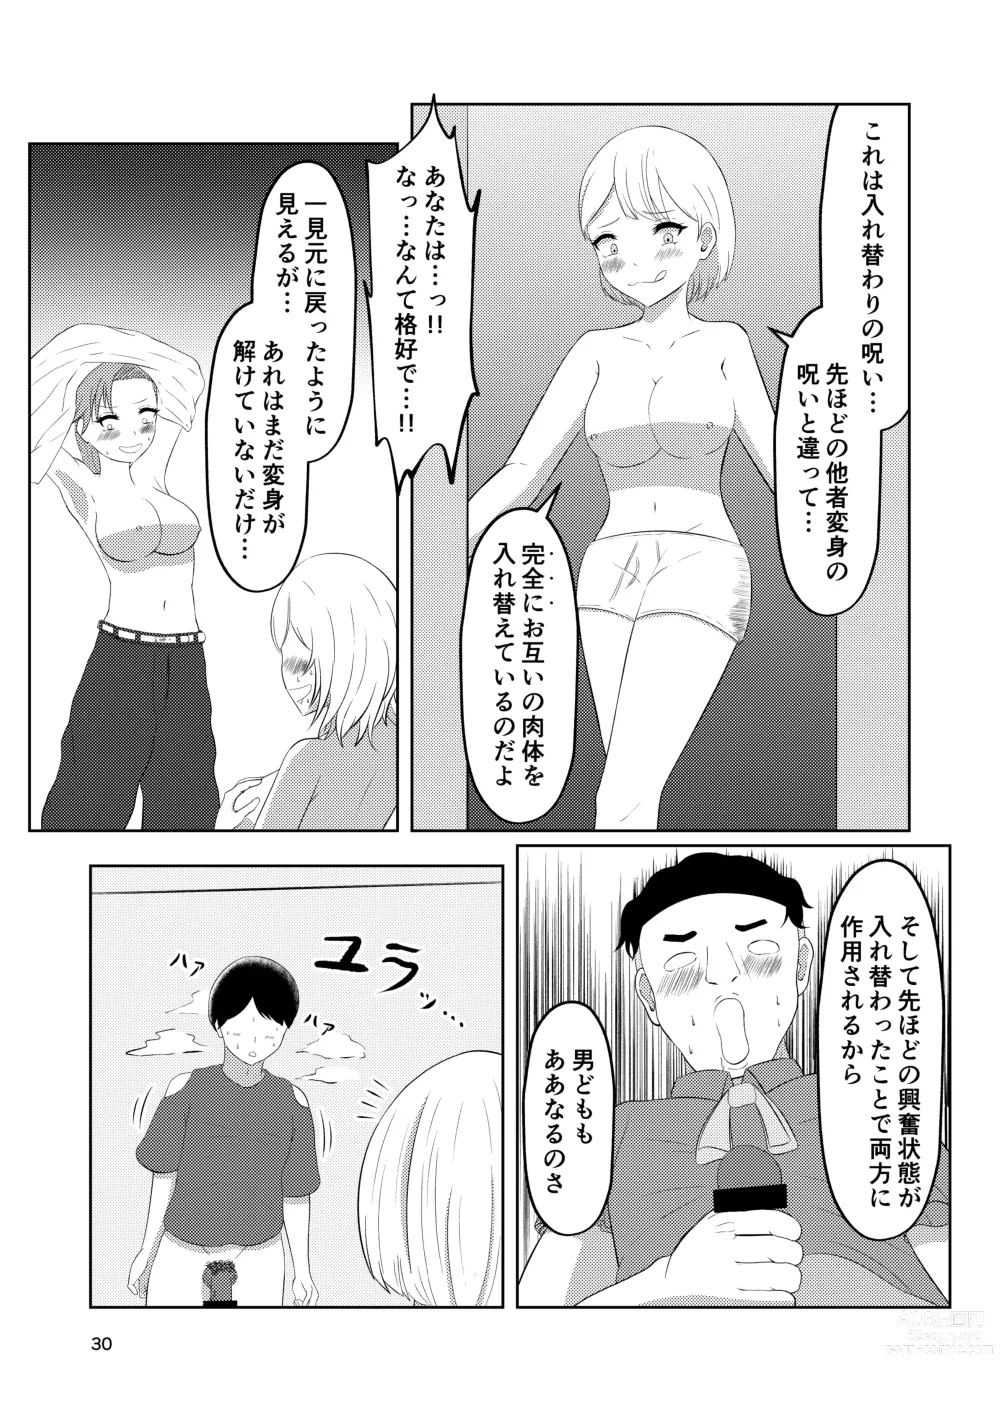 Page 30 of doujinshi Sougo Henshin no Yakata